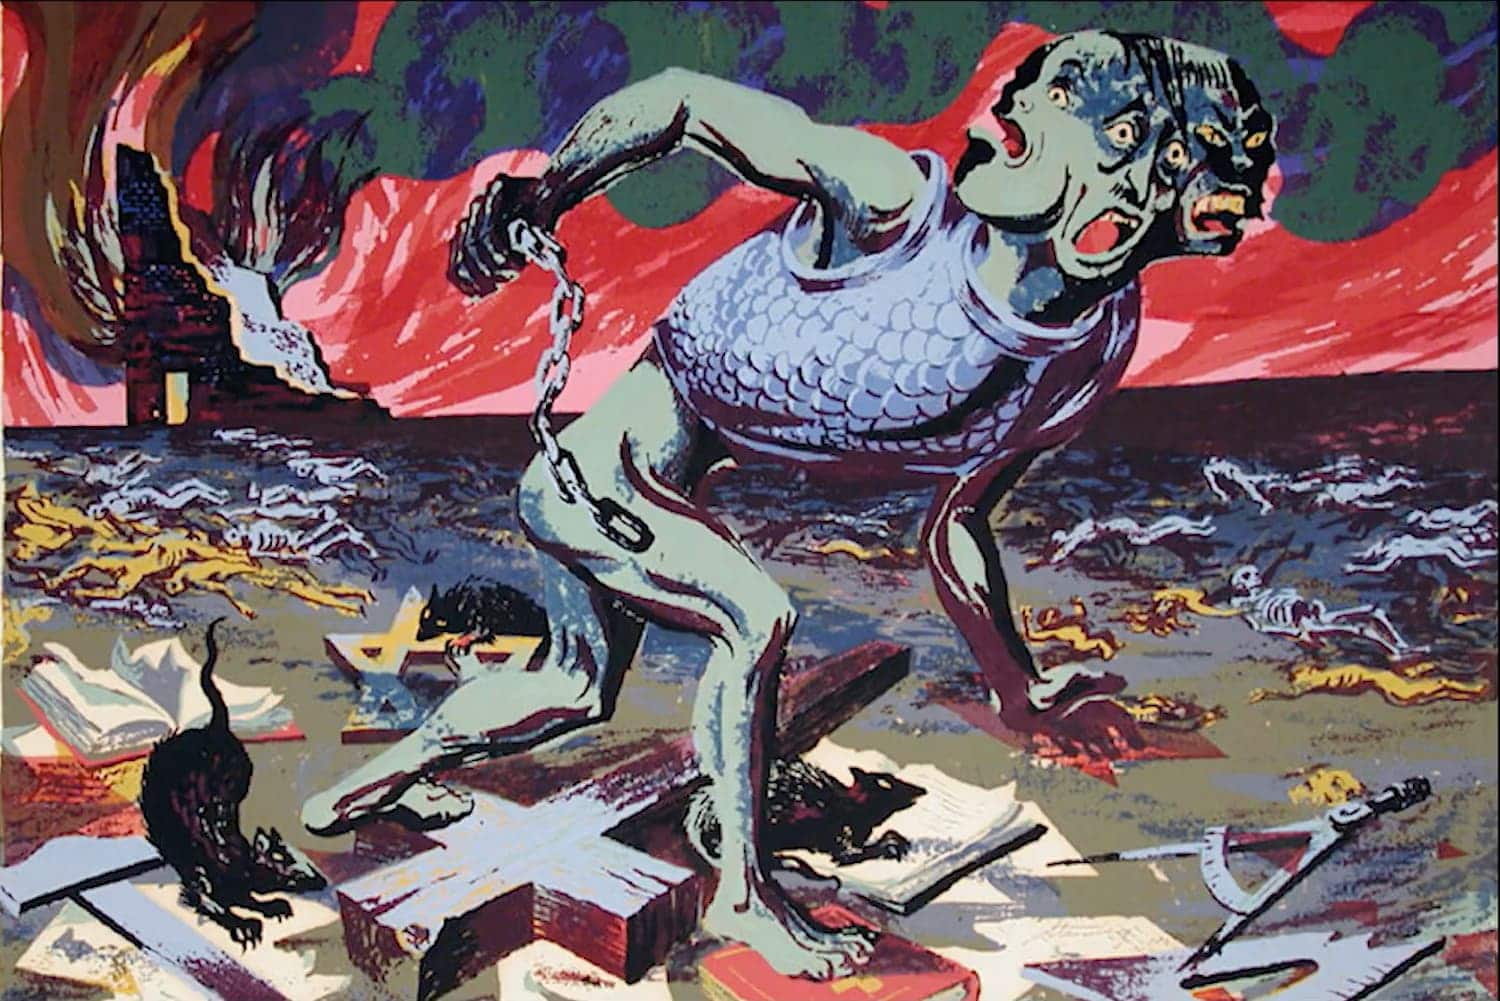 "Fascism" by Harry Steinberg, 1943